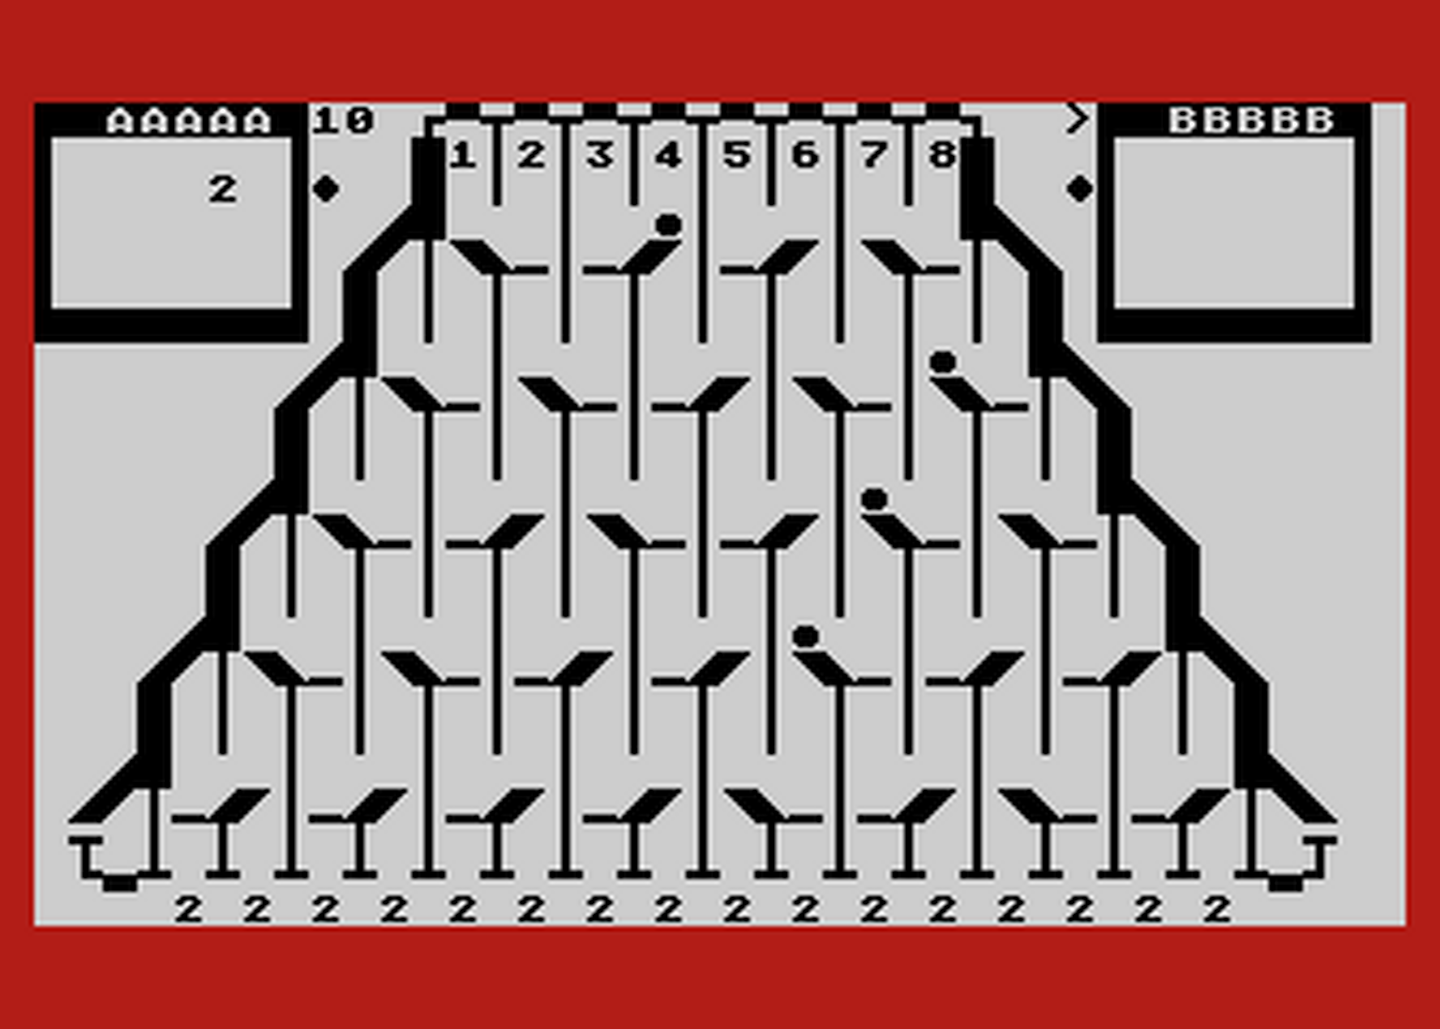 Atari GameBase Switchbox Compute! 1986